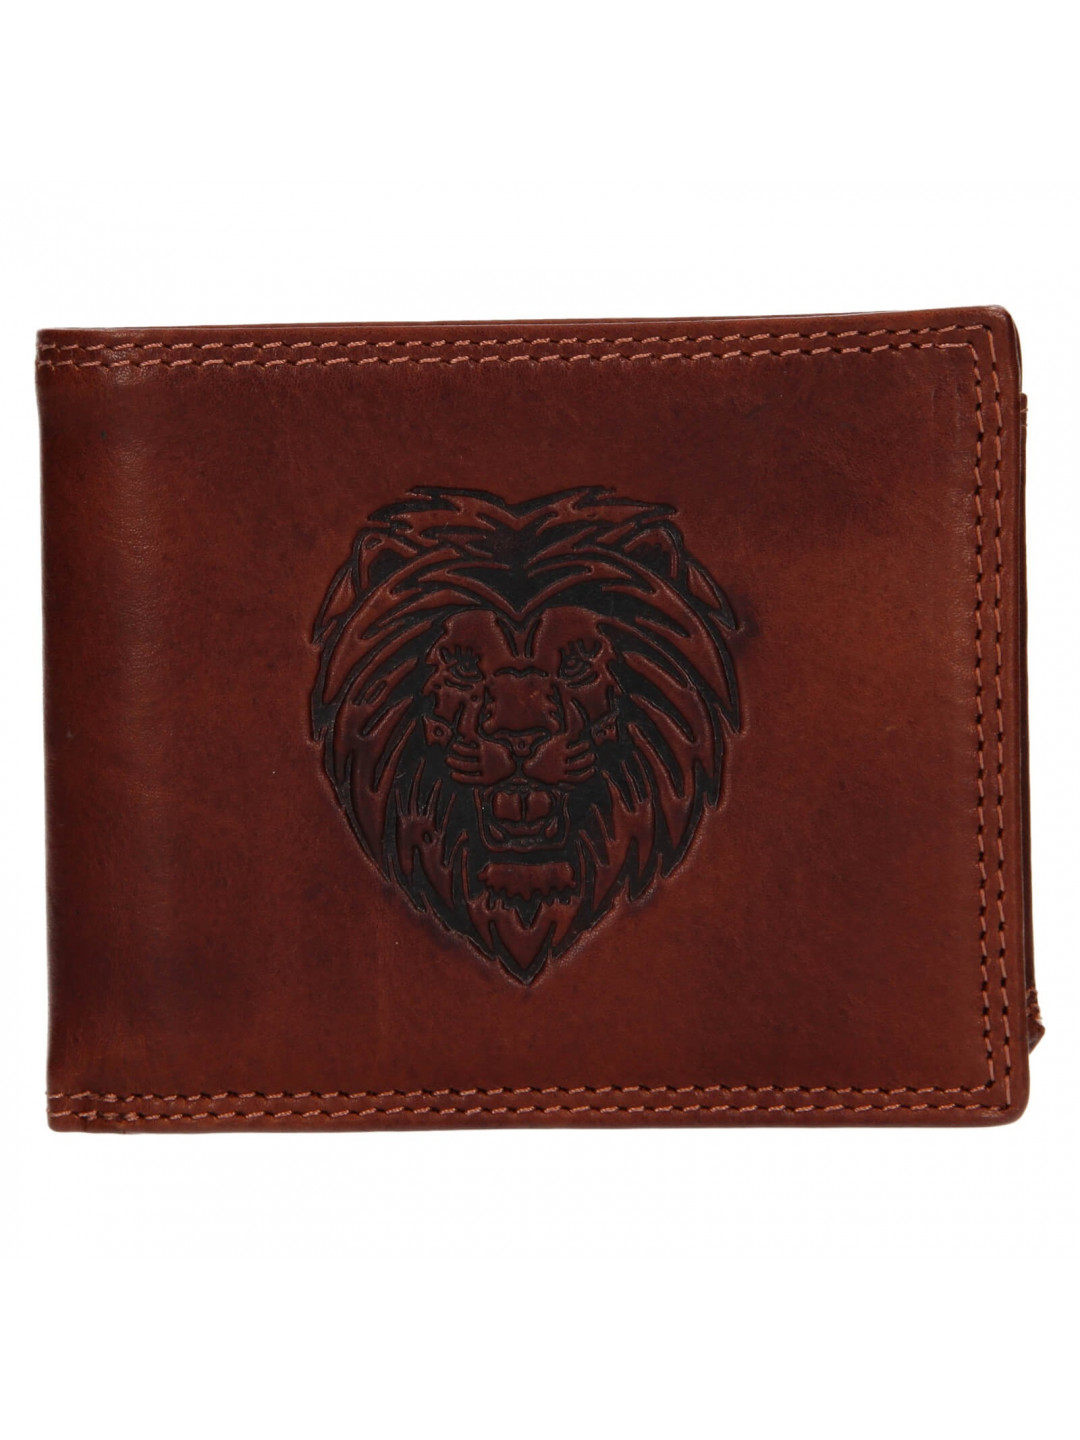 Pánská kožená peněženka SendiDesign Lion – hnědá